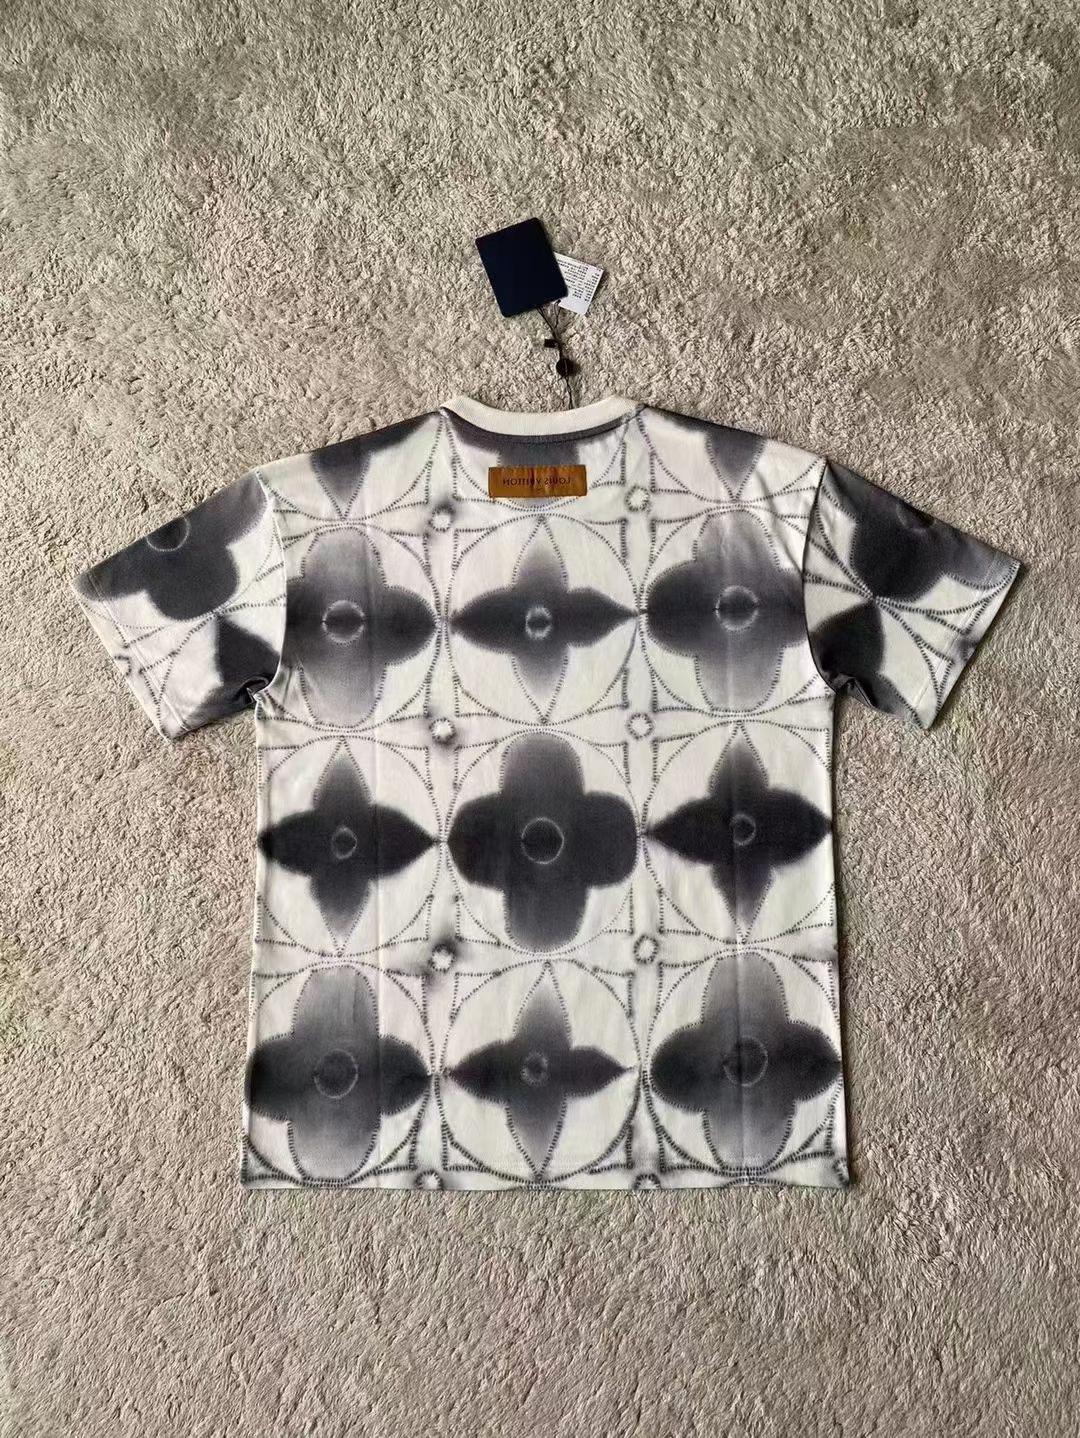 printed-shibori-tie-dye-t-shirt-7027_16845017313-1000